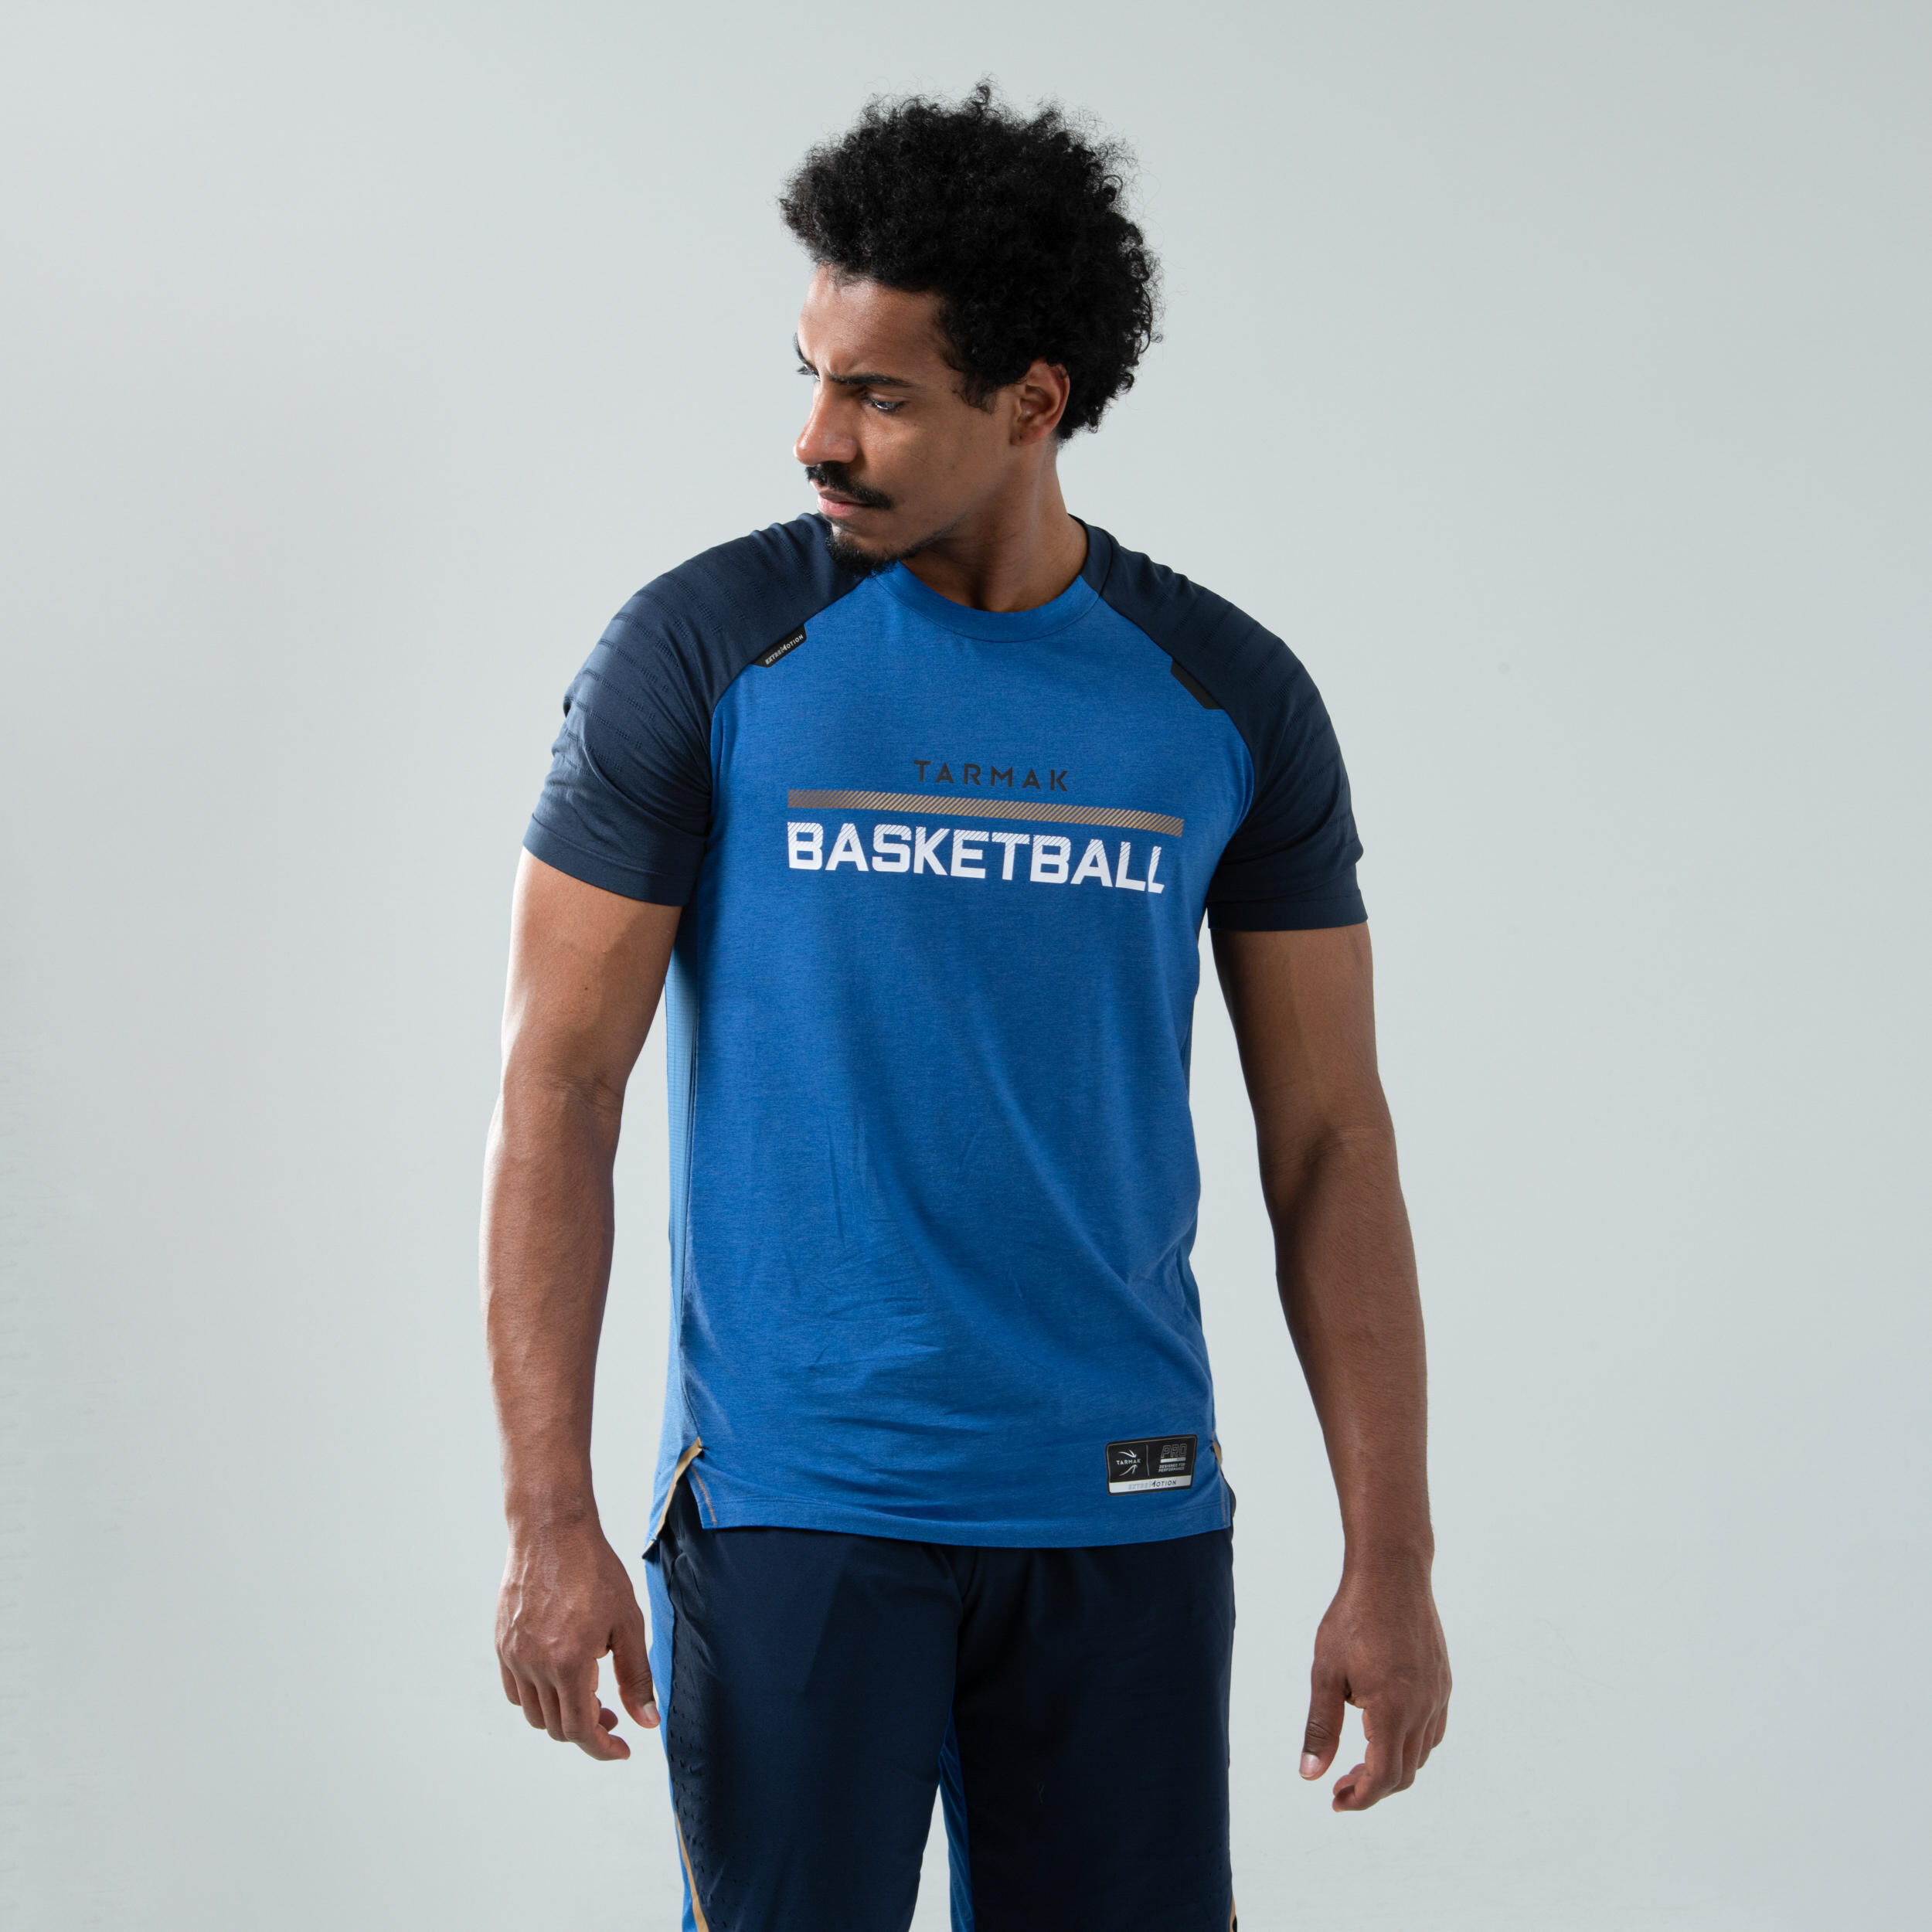 TARMAK Men's Basketball T-Shirt / Jersey TS900 - Blue